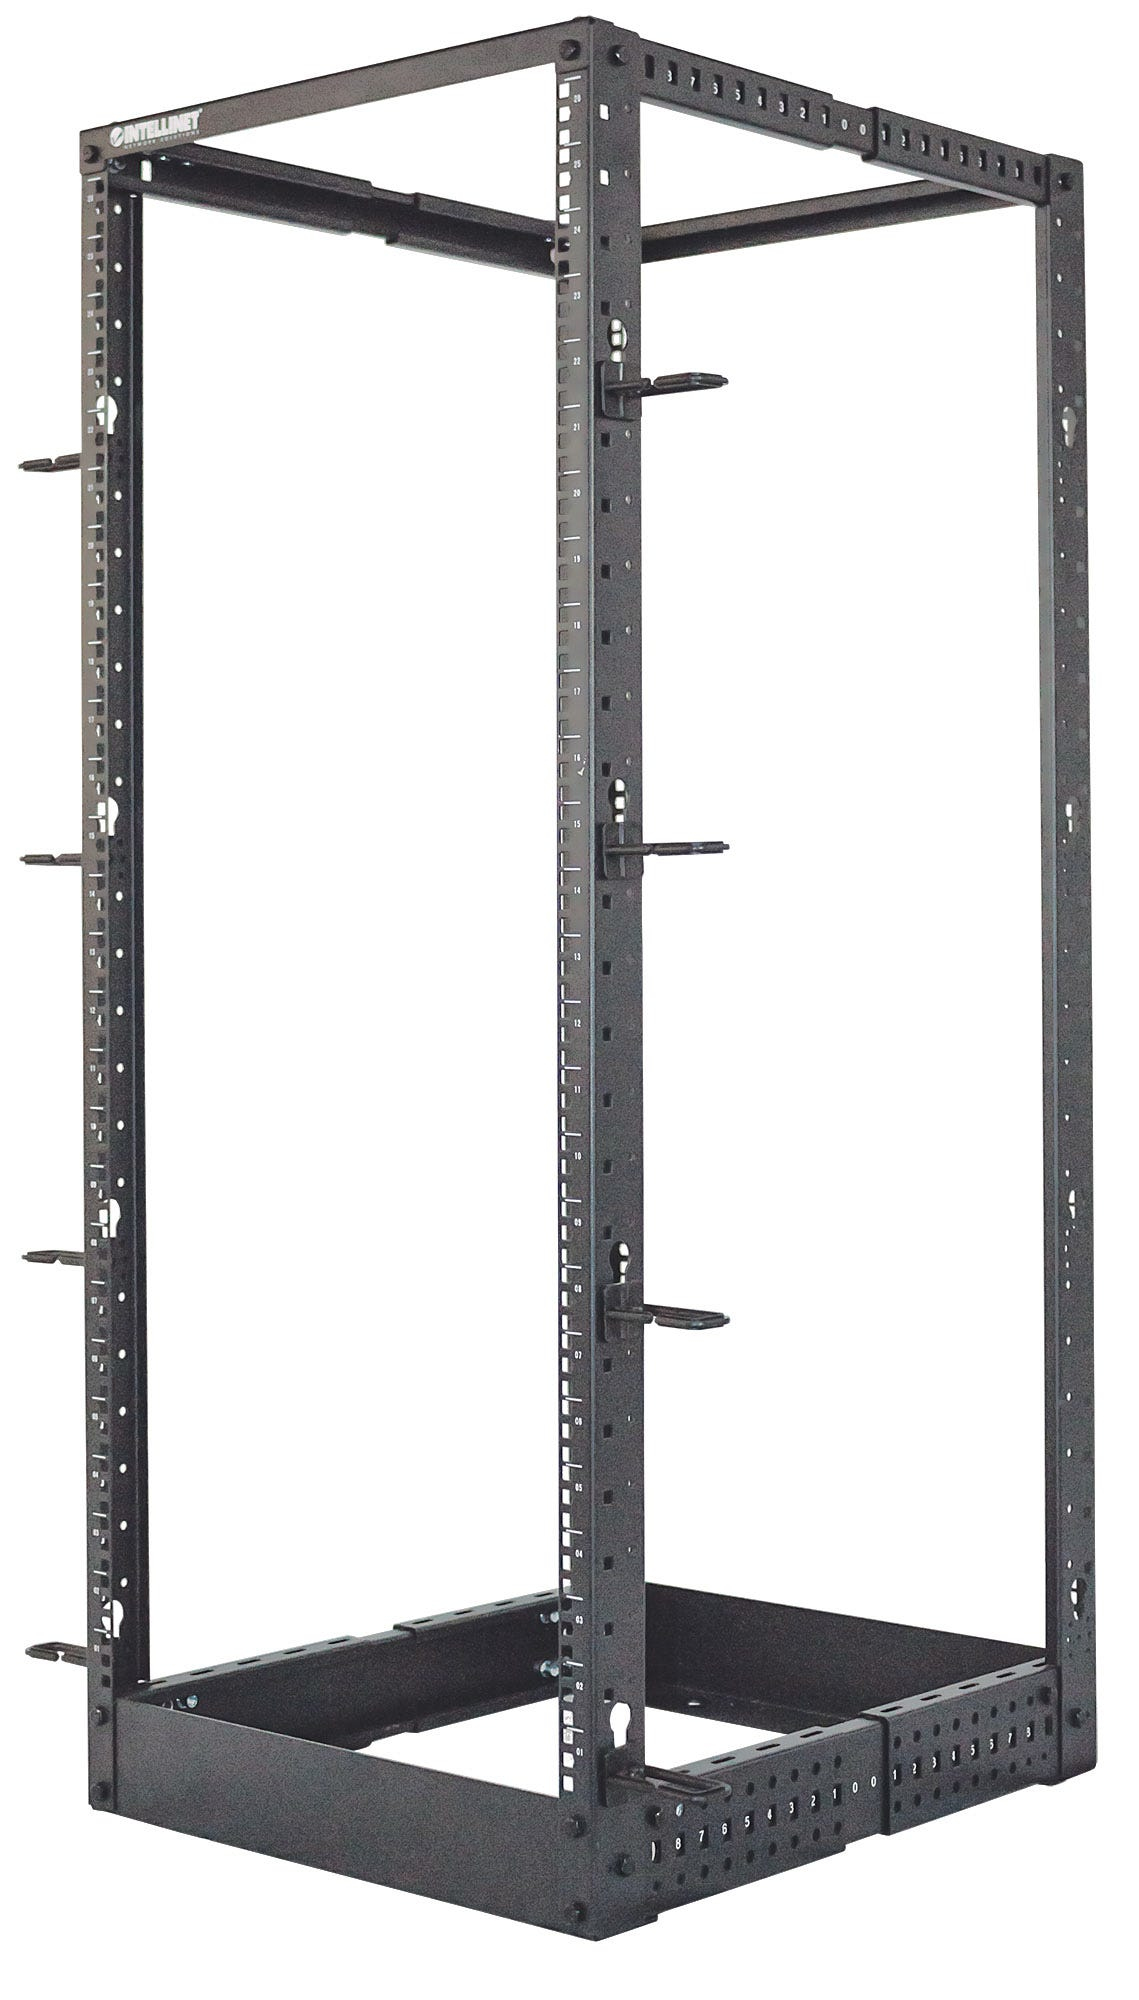 Intellinet 19" 4-Pfosten Laborgestell, 26 HE, Flatpack, schwarz - Schrank - offener Rahmen - 4 Pfosten - Schwarz, RAL 9005 - 26U - 48.3 cm (19")